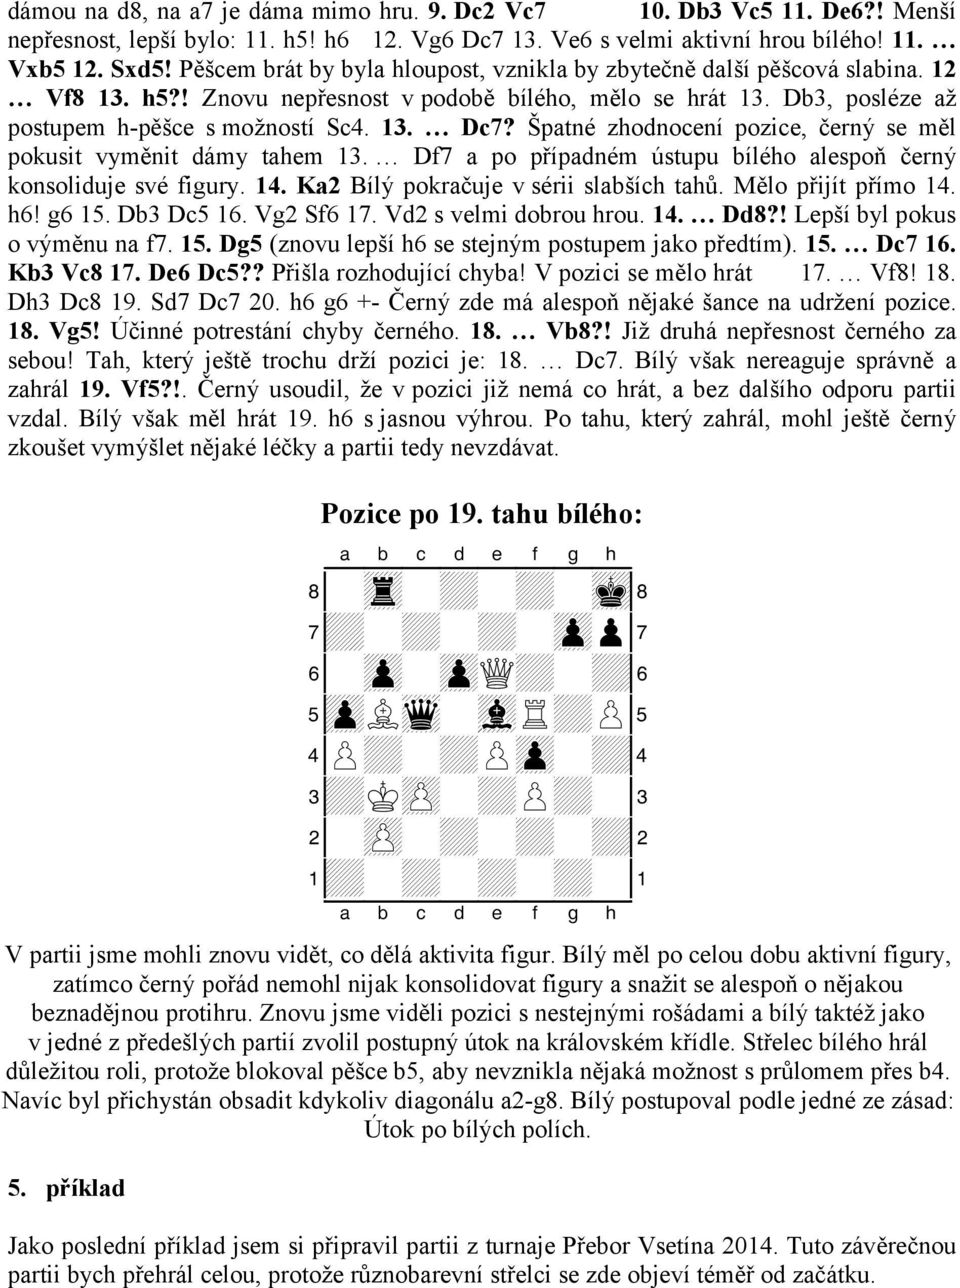 Špatné zhodnocení pozice, černý se měl pokusit vyměnit dámy tahem 13. Df7 a po případném ústupu bílého alespoň černý konsoliduje své figury. 14. Ka2 Bílý pokračuje v sérii slabších tahů.